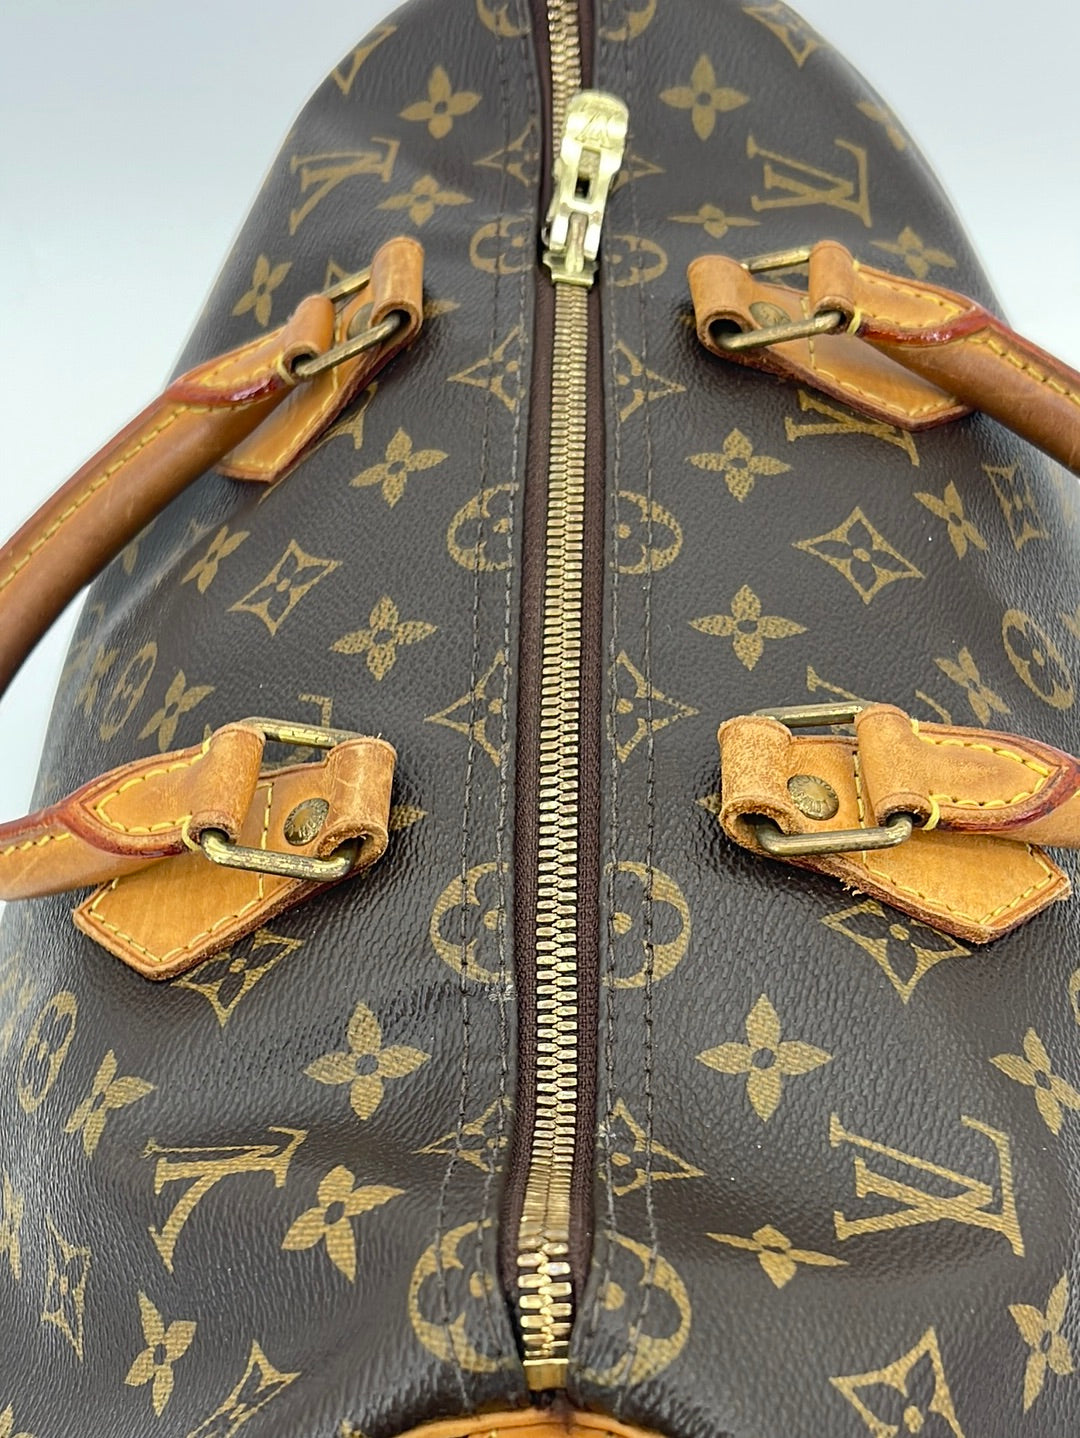 Louis Vuitton Monogram Canvas Speedy 35 Shoulder Bag Added Insert & Ch –  Debsluxurycloset